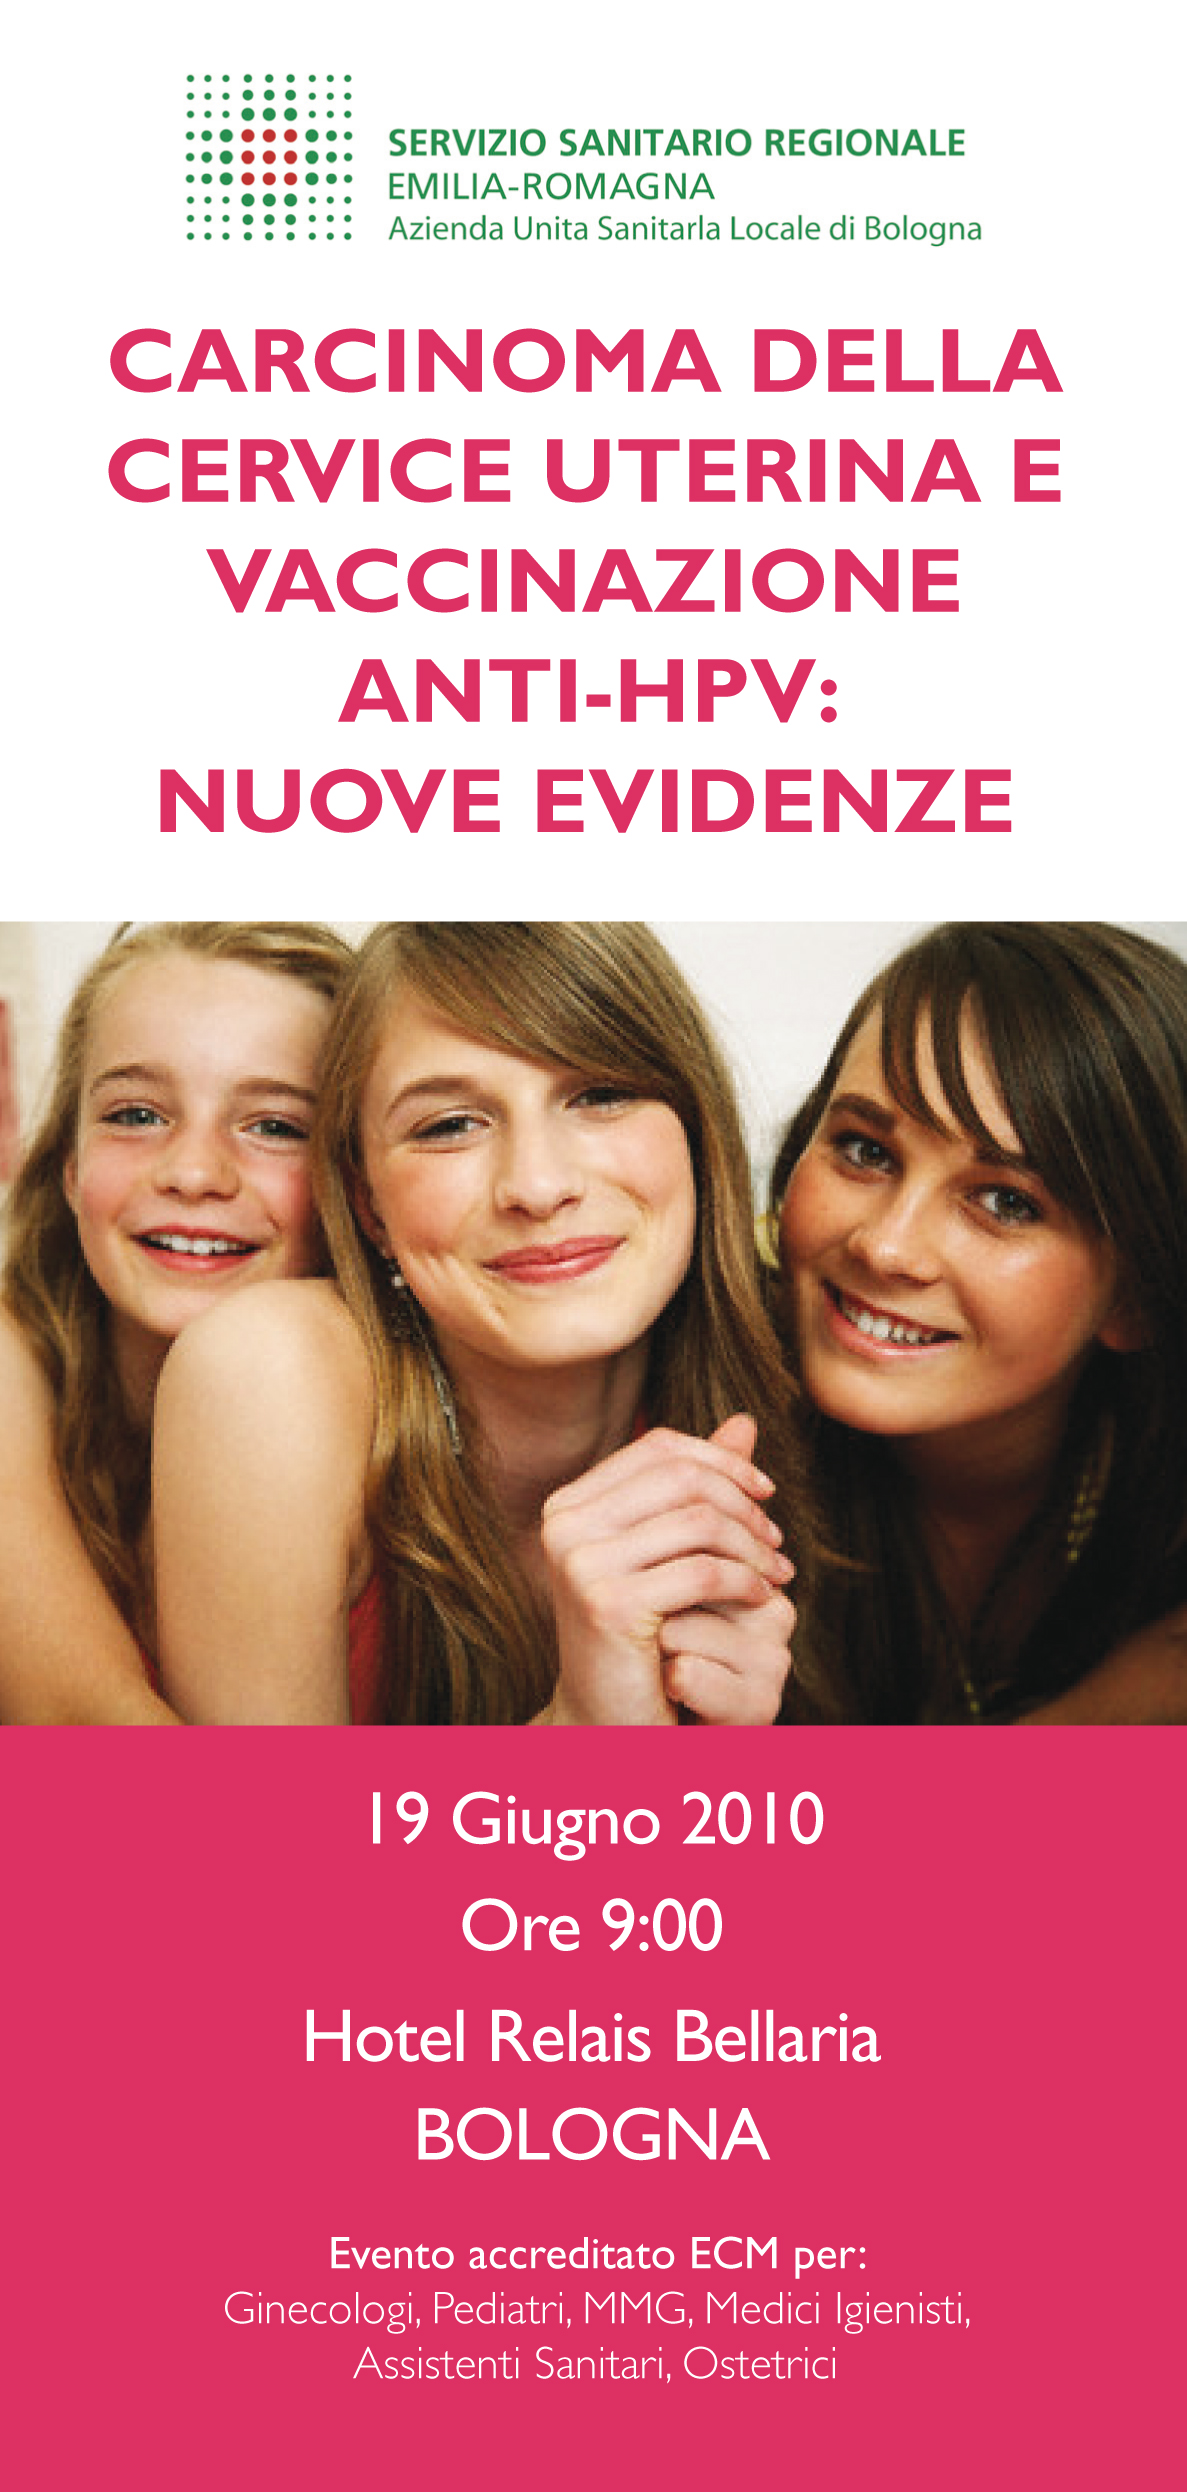 Carcinoma della cervice uterina e vaccinazione anti-hpv: nuove evidenze